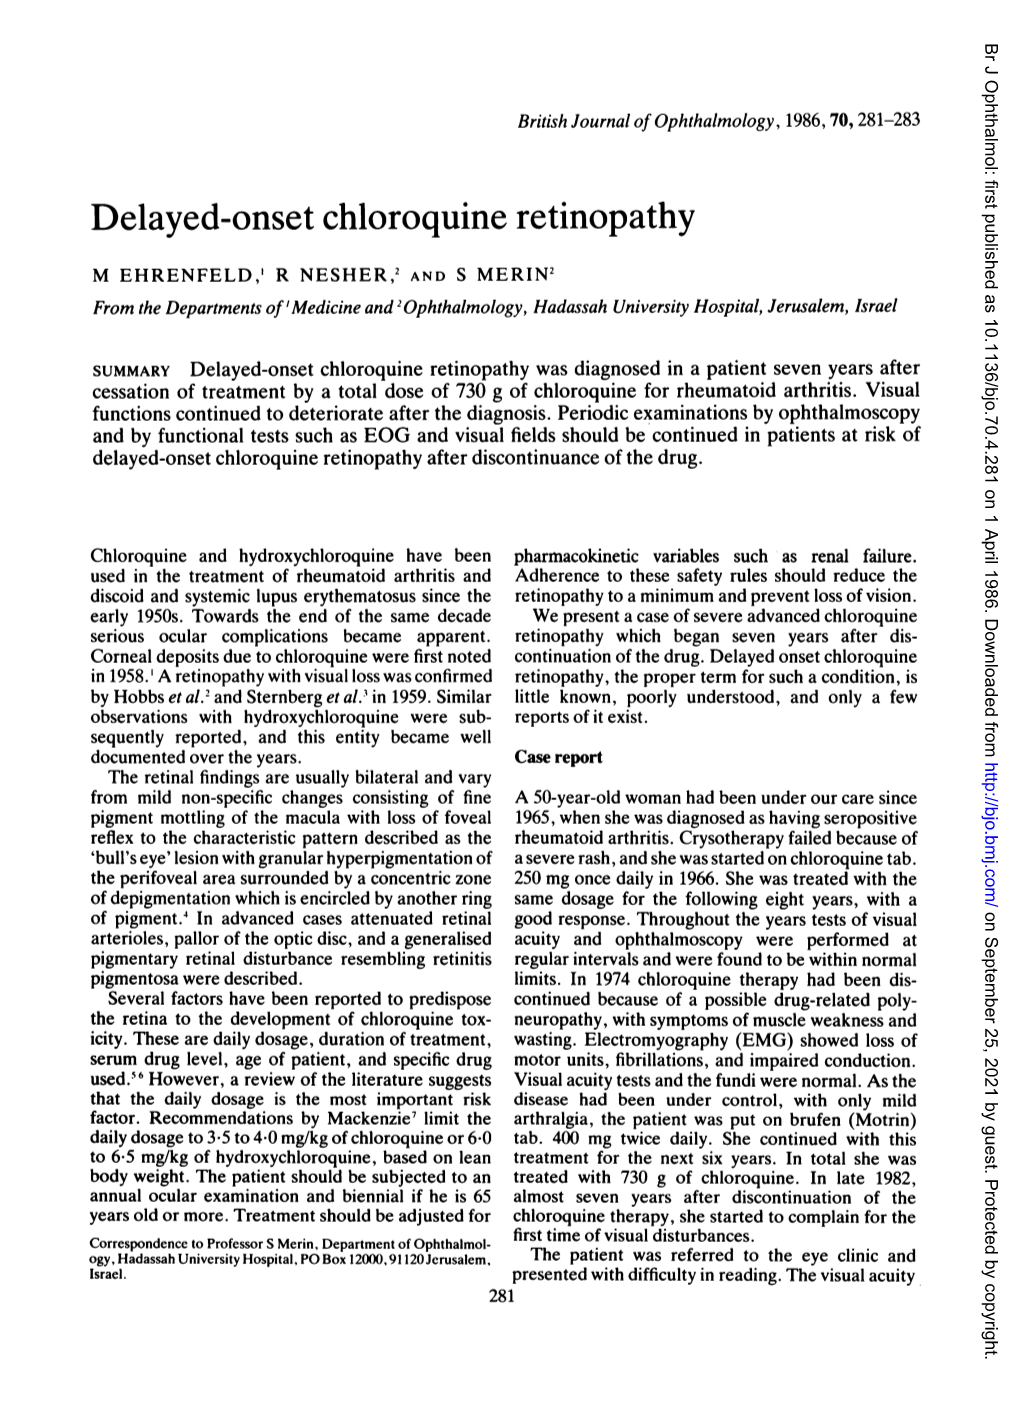 Delayed-Onset Chloroquine Retinopathy